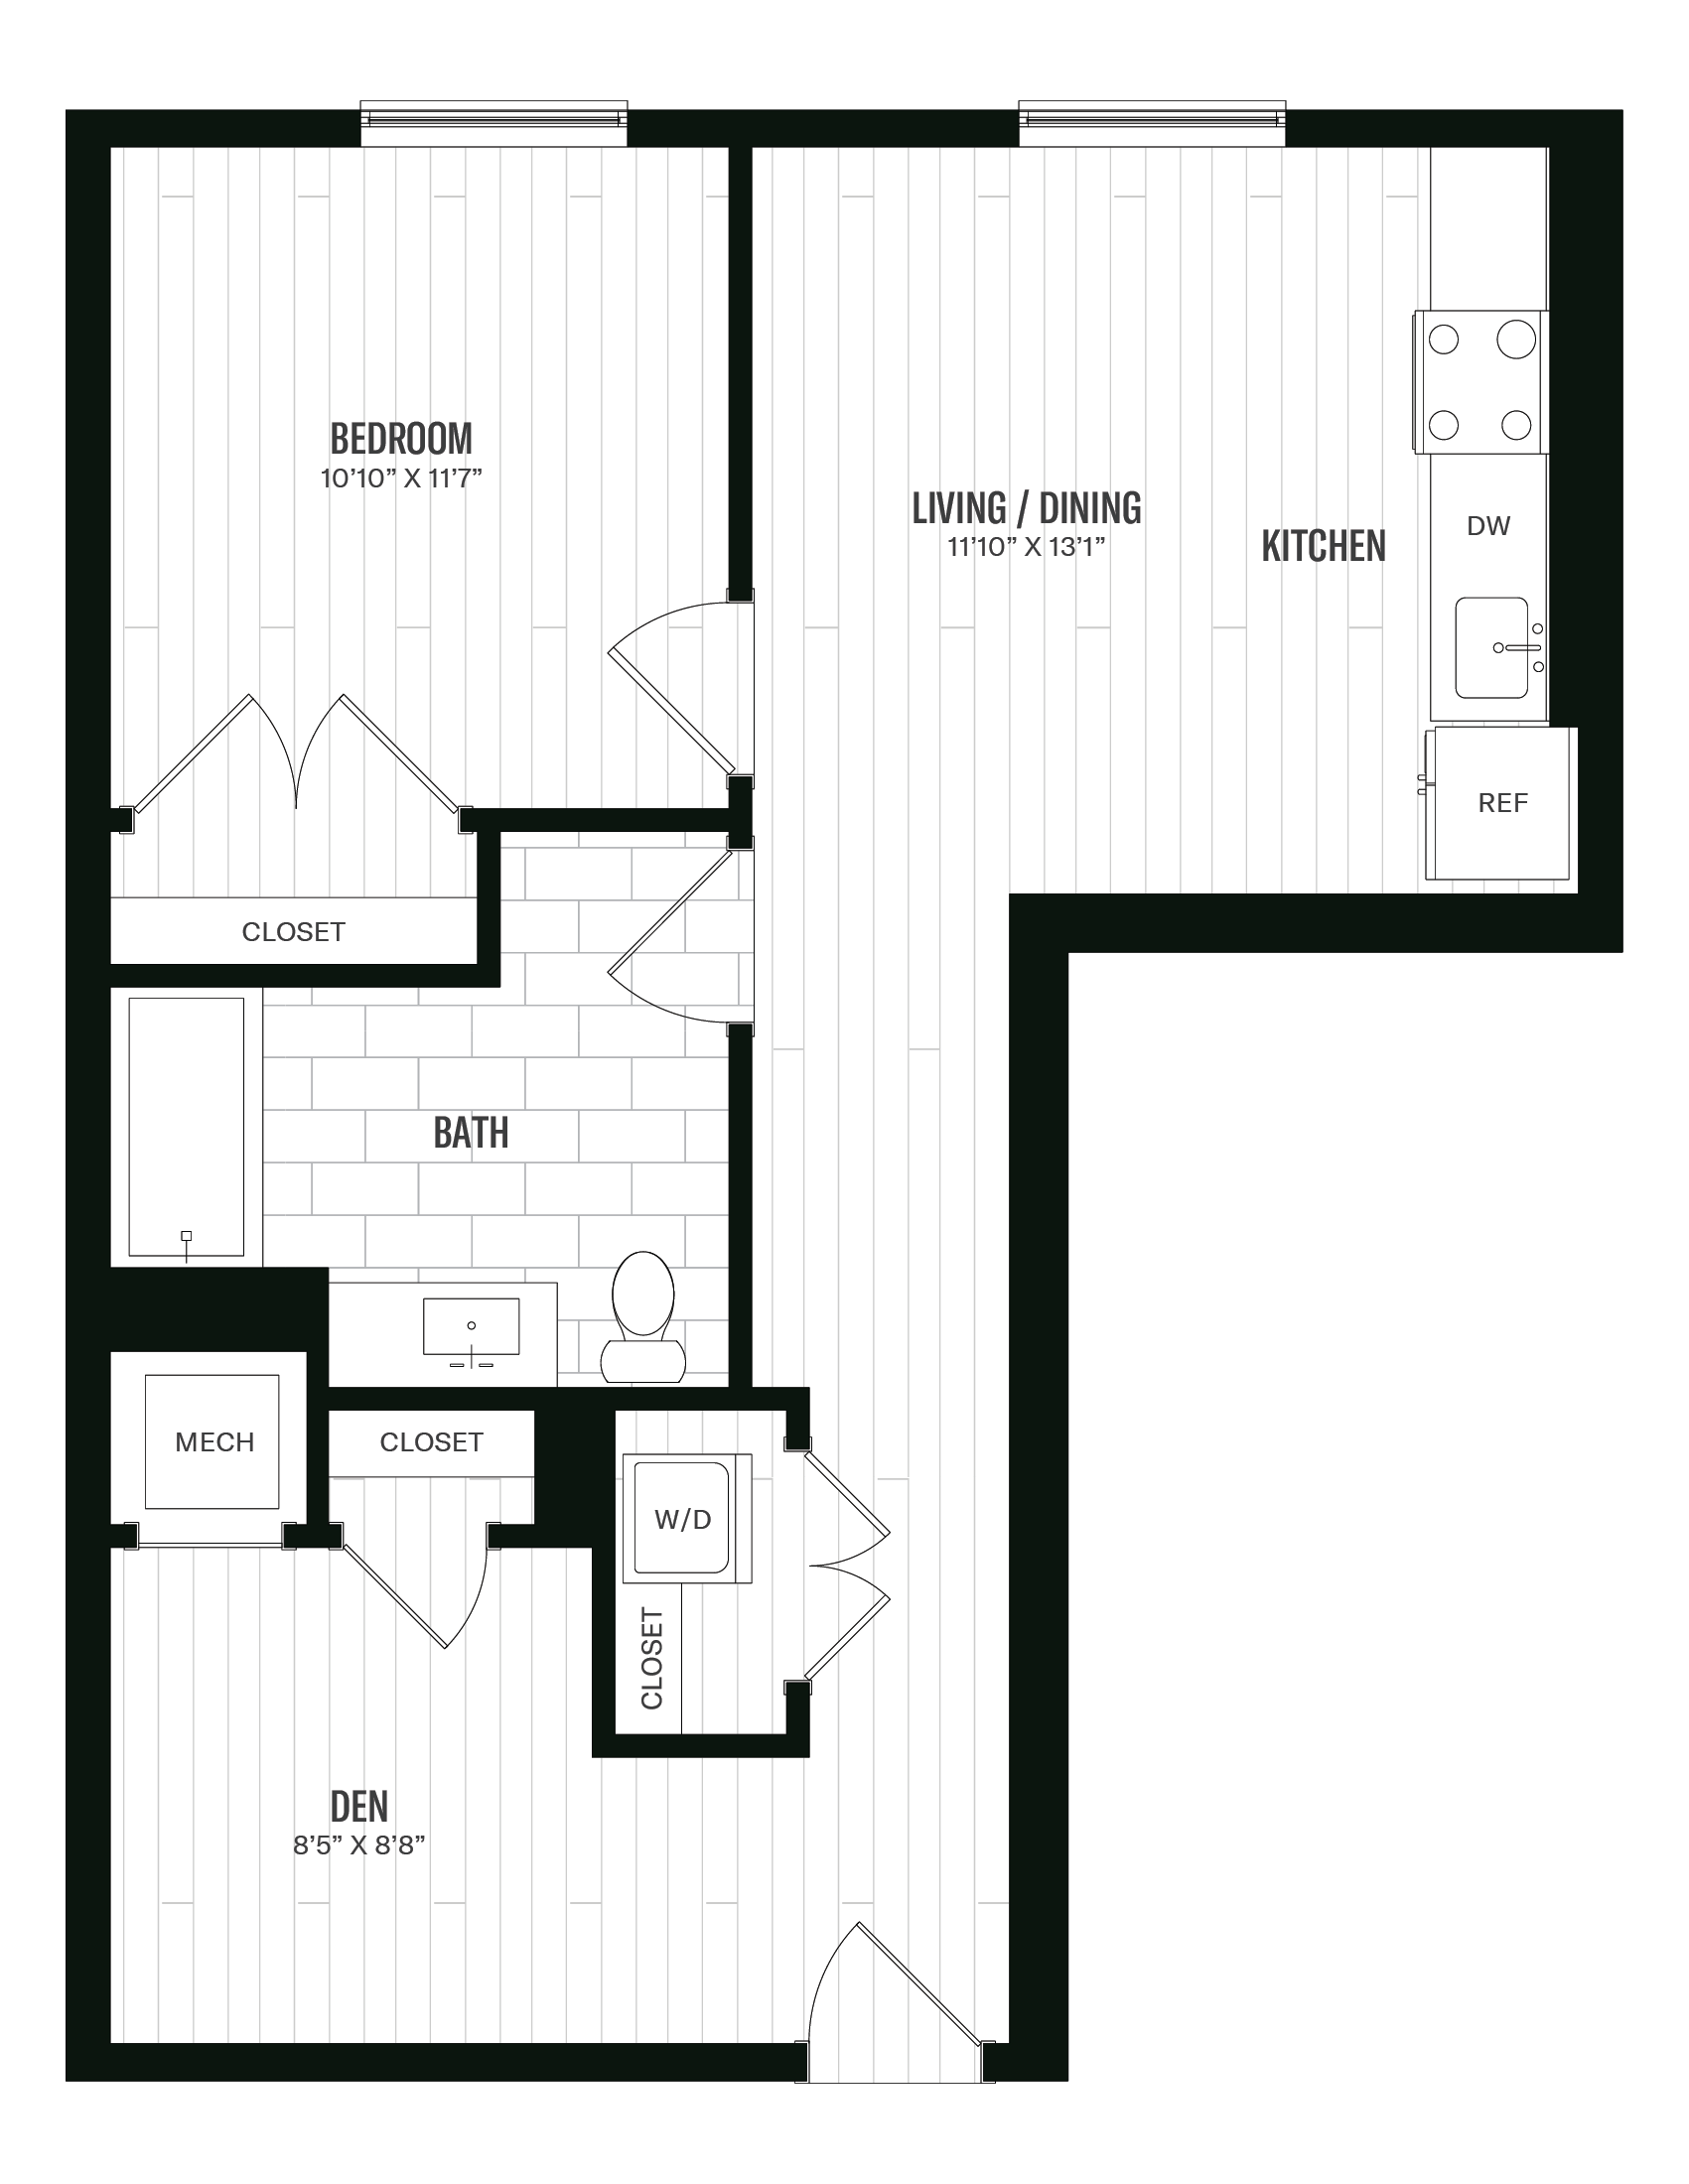 Floorplan image of unit 264